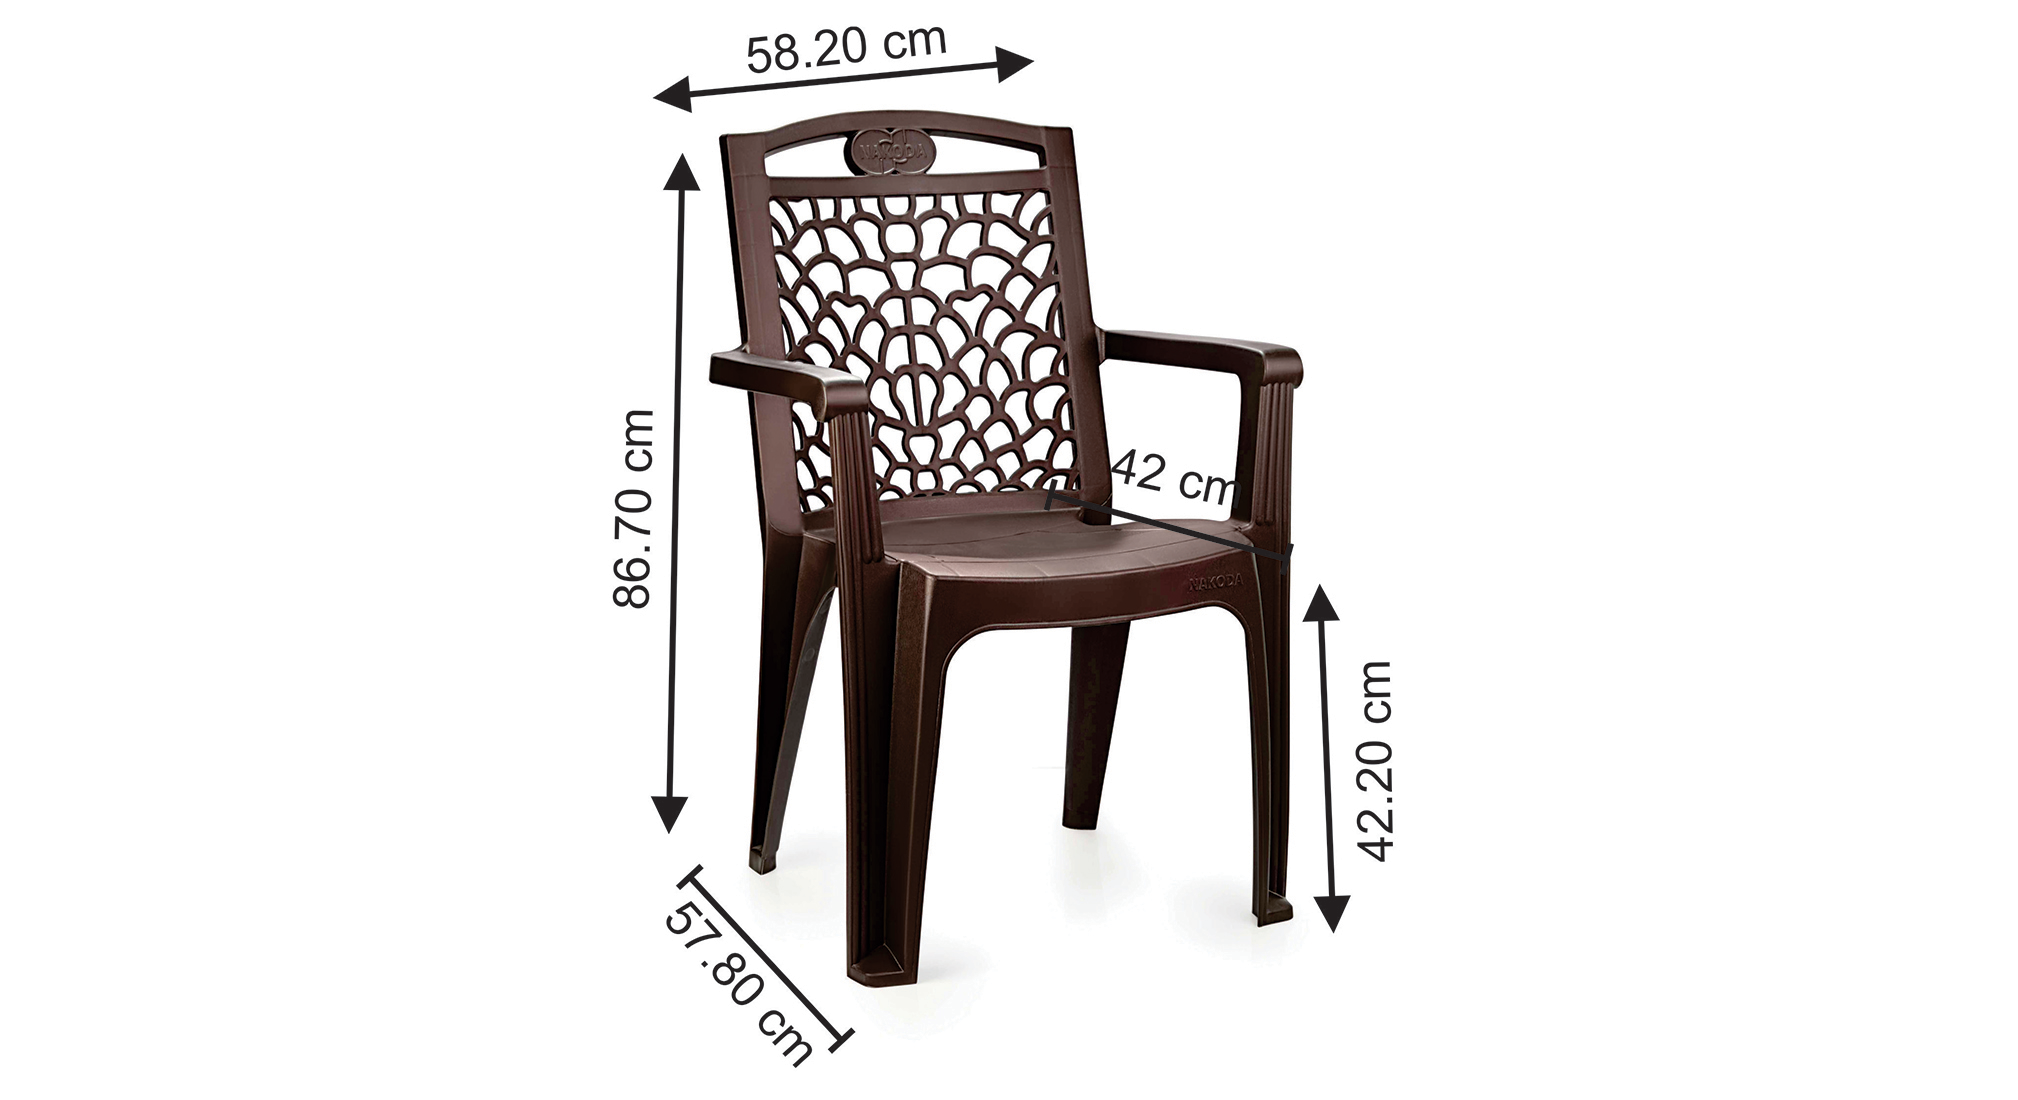 Clinton plastic chair in brown colour 5